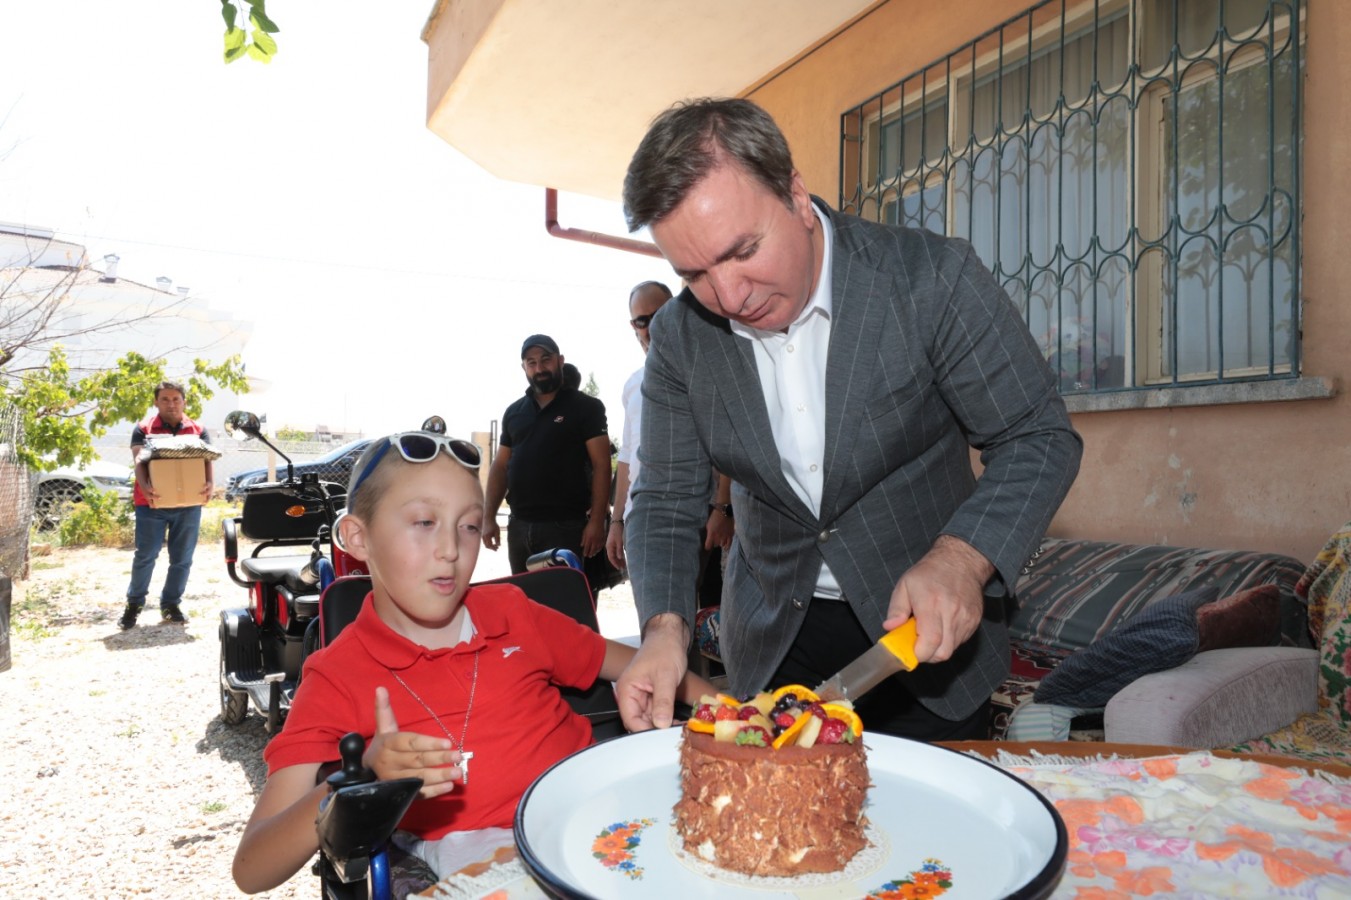 Vali Aydoğdu, DMD hastası çocuğun pastasını yedirdi